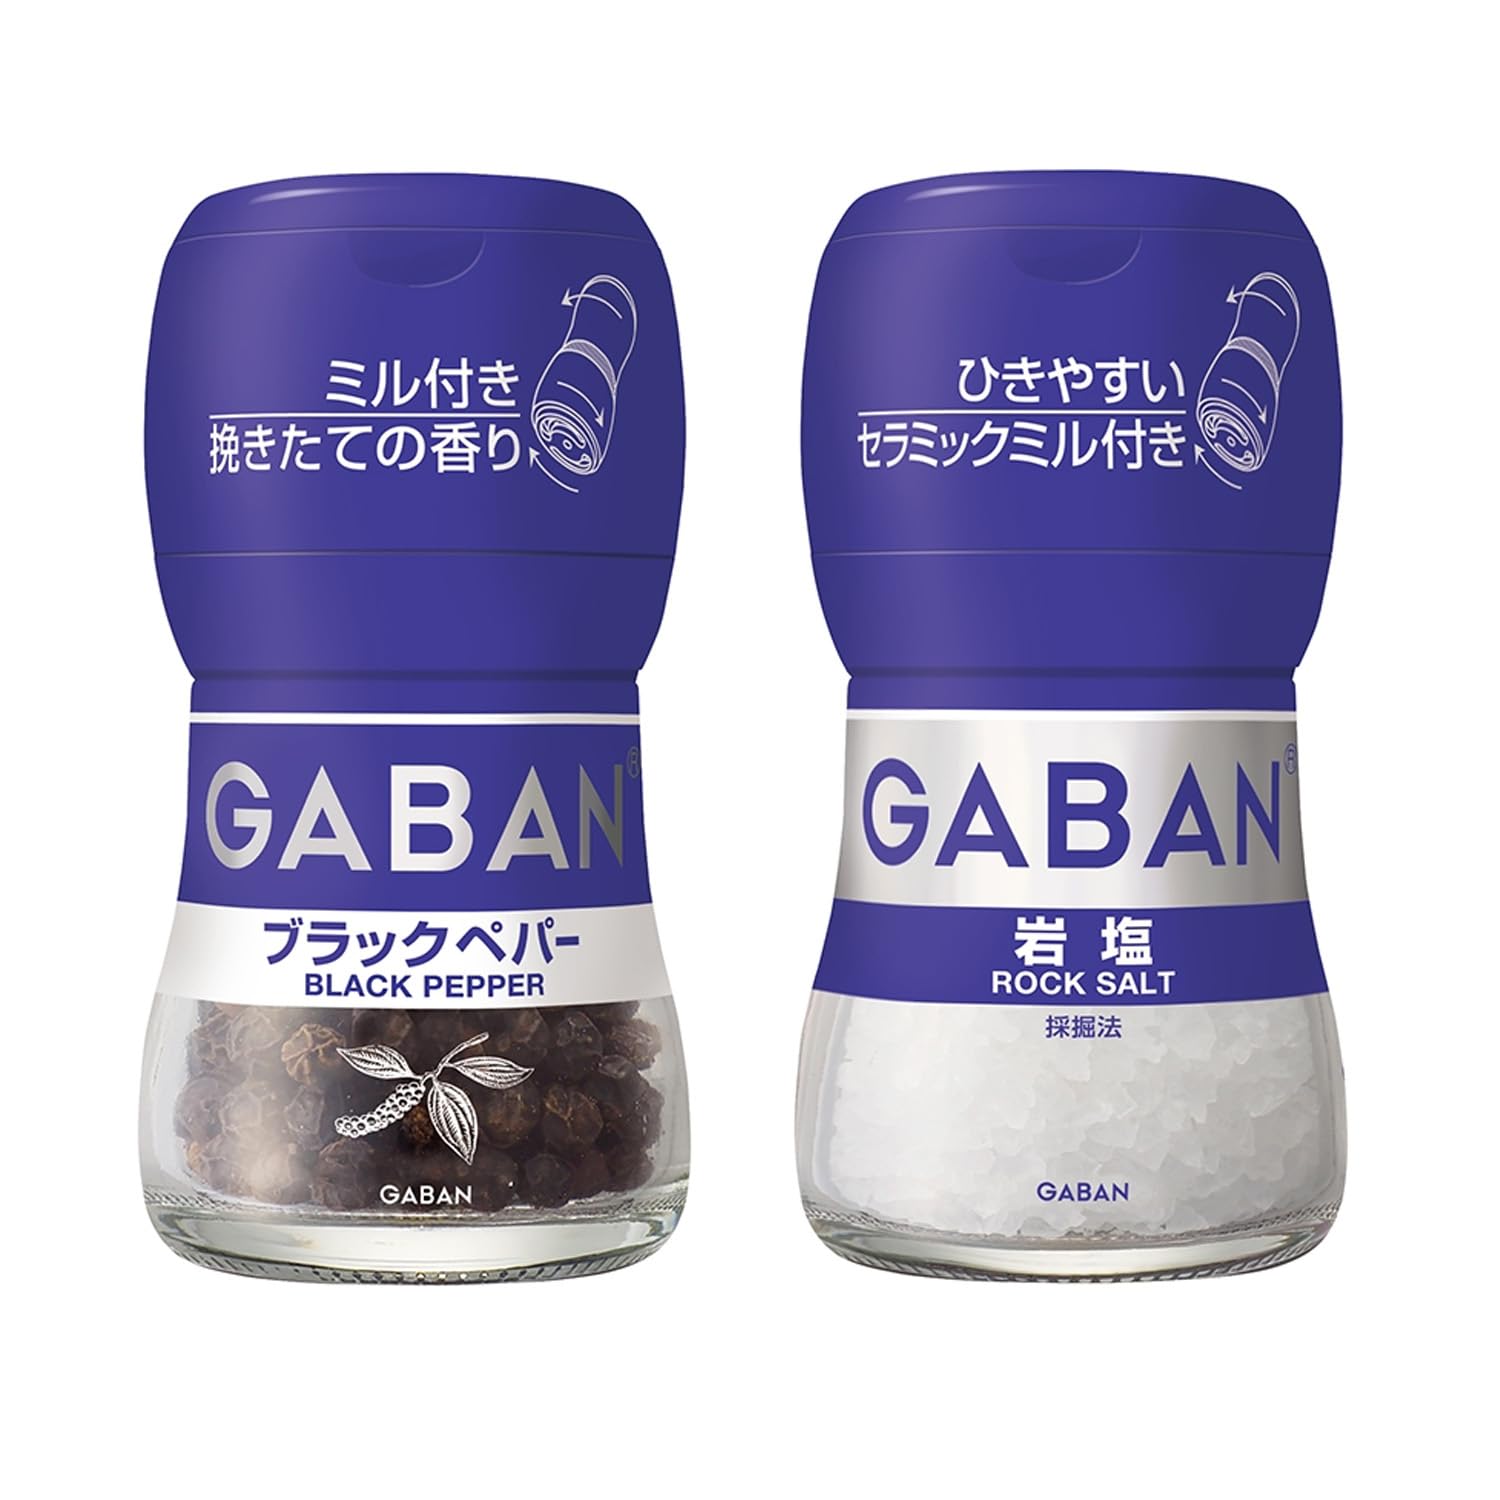 【】【ハウス】 GABAN ミル付スパイス2種アソートセット(ブラックペパー/岩塩)【セット買い】